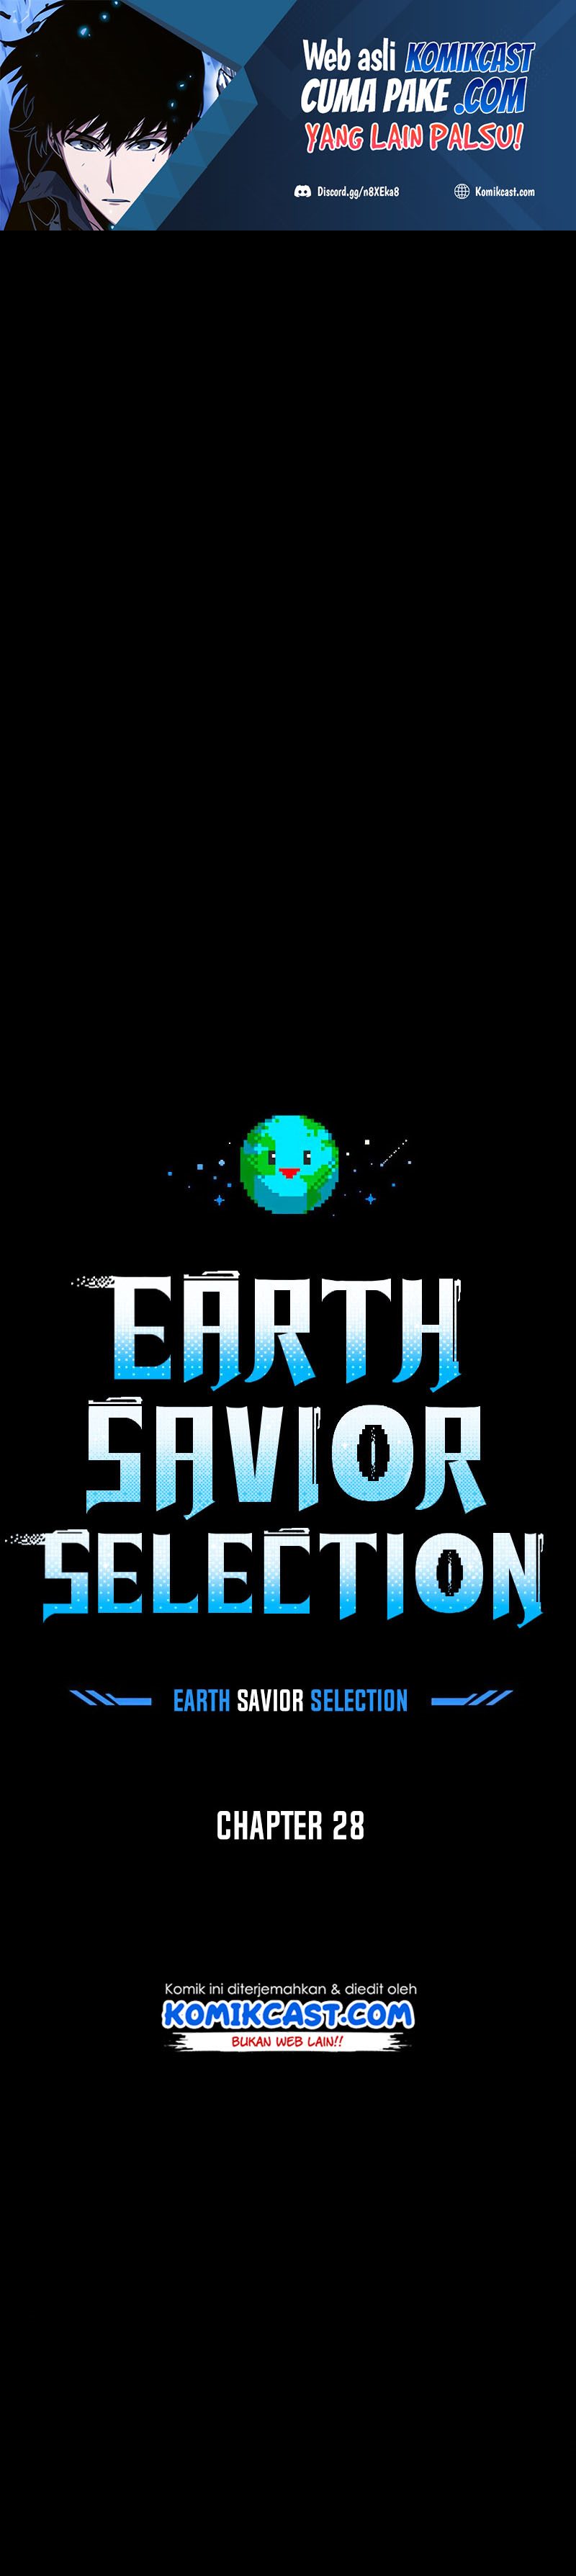 The Earth Savior Selection Chapter 28